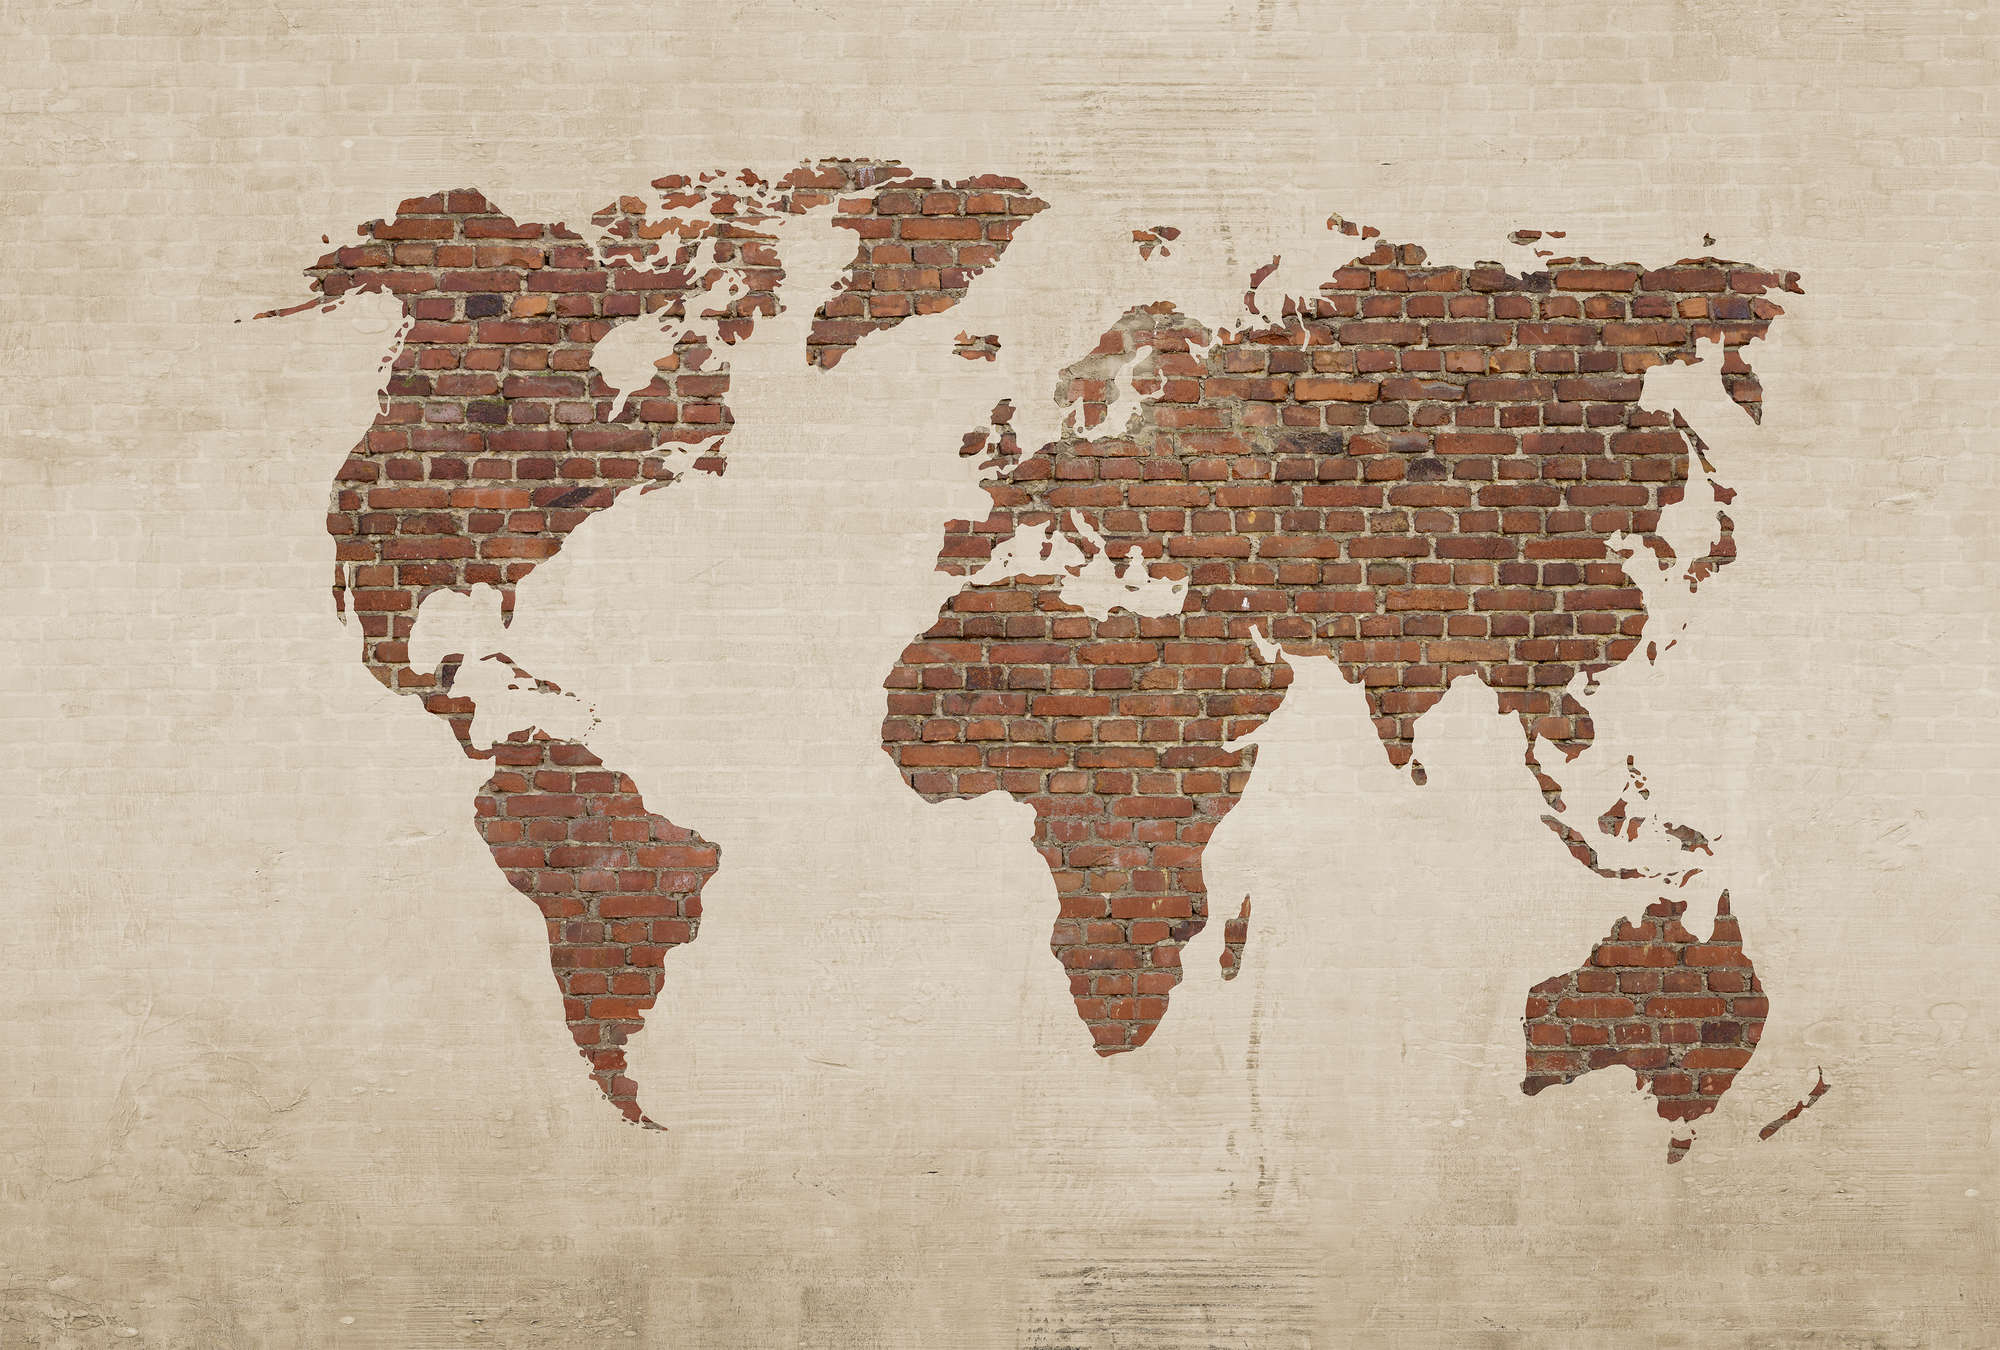             Mural con óptica de pared y mapa del mundo - crema, marrón
        